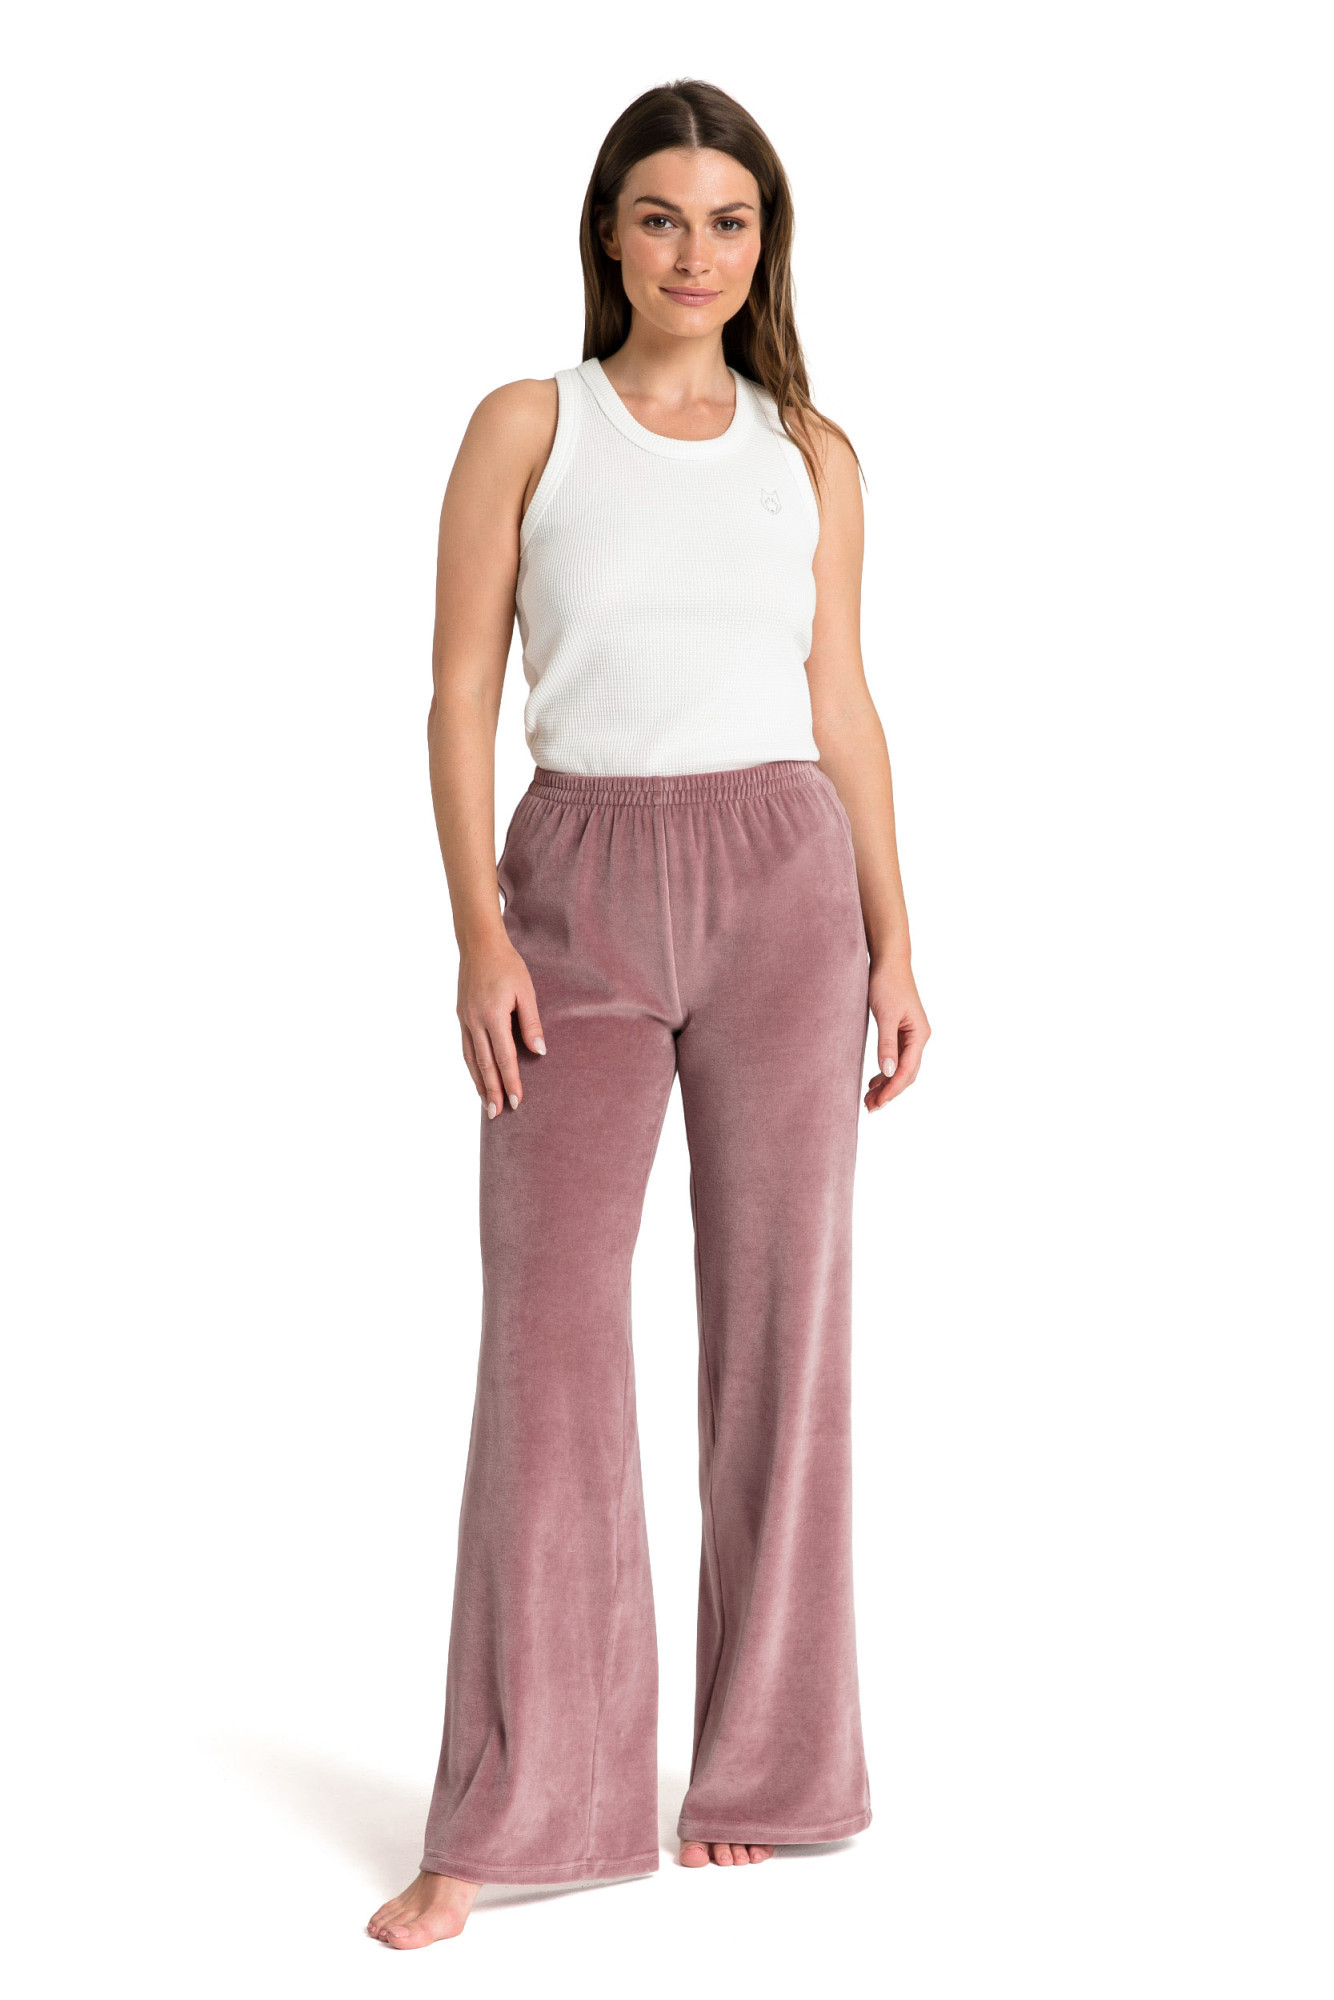 LaLupa Kalhoty LA086 Krepová růžová XL